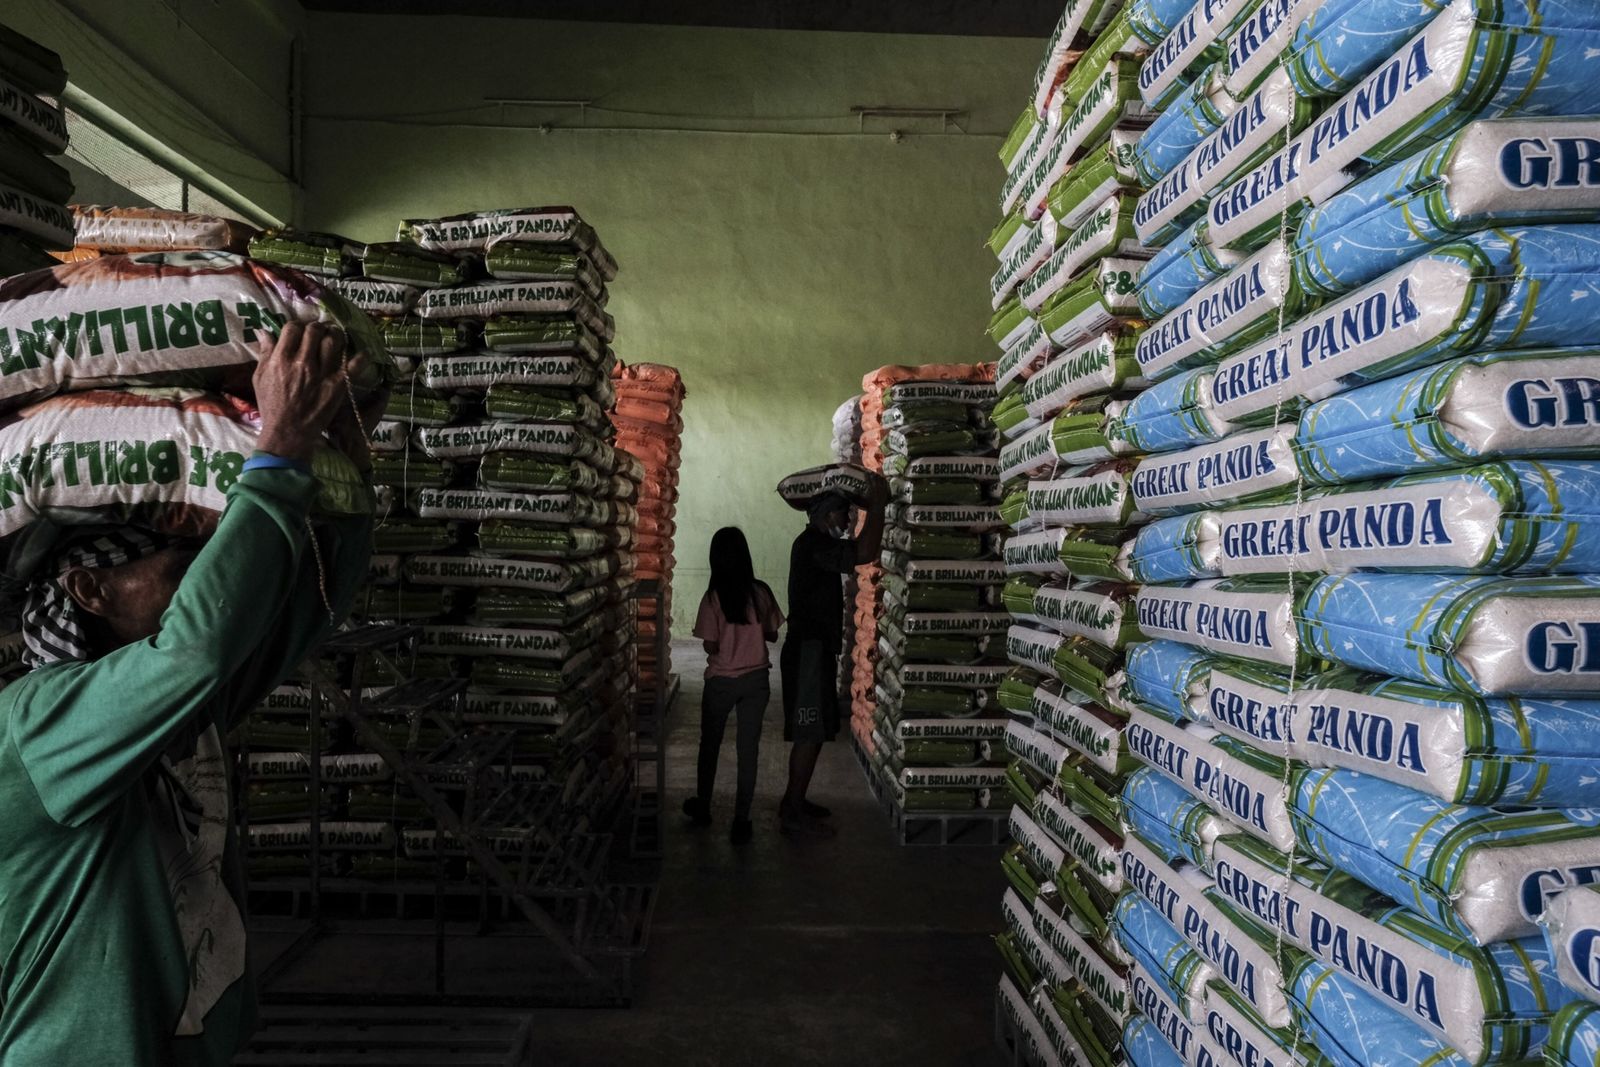 أزمة الأرز في الفلبين جرس إنذار لتضخم الأسعار عالمياً